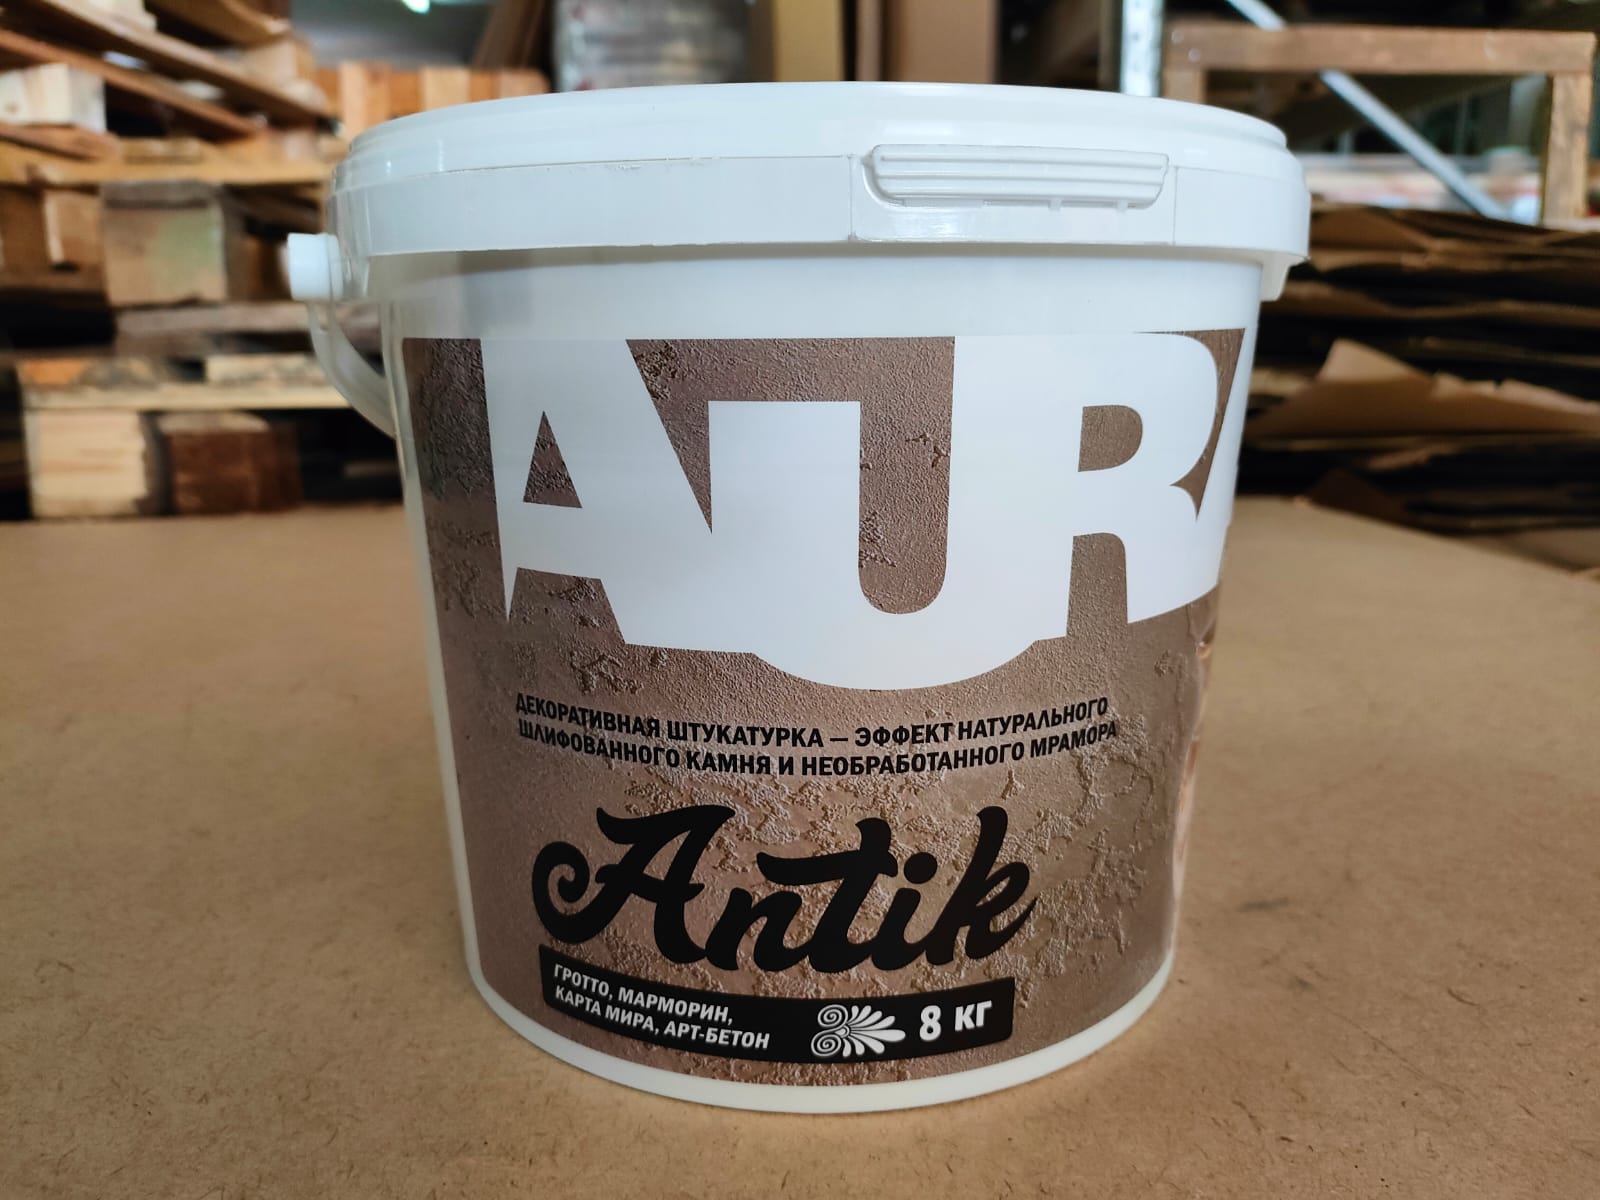 Декоративная штукатурка AURA Antik 8 кг для художественной отделки стен и потолков